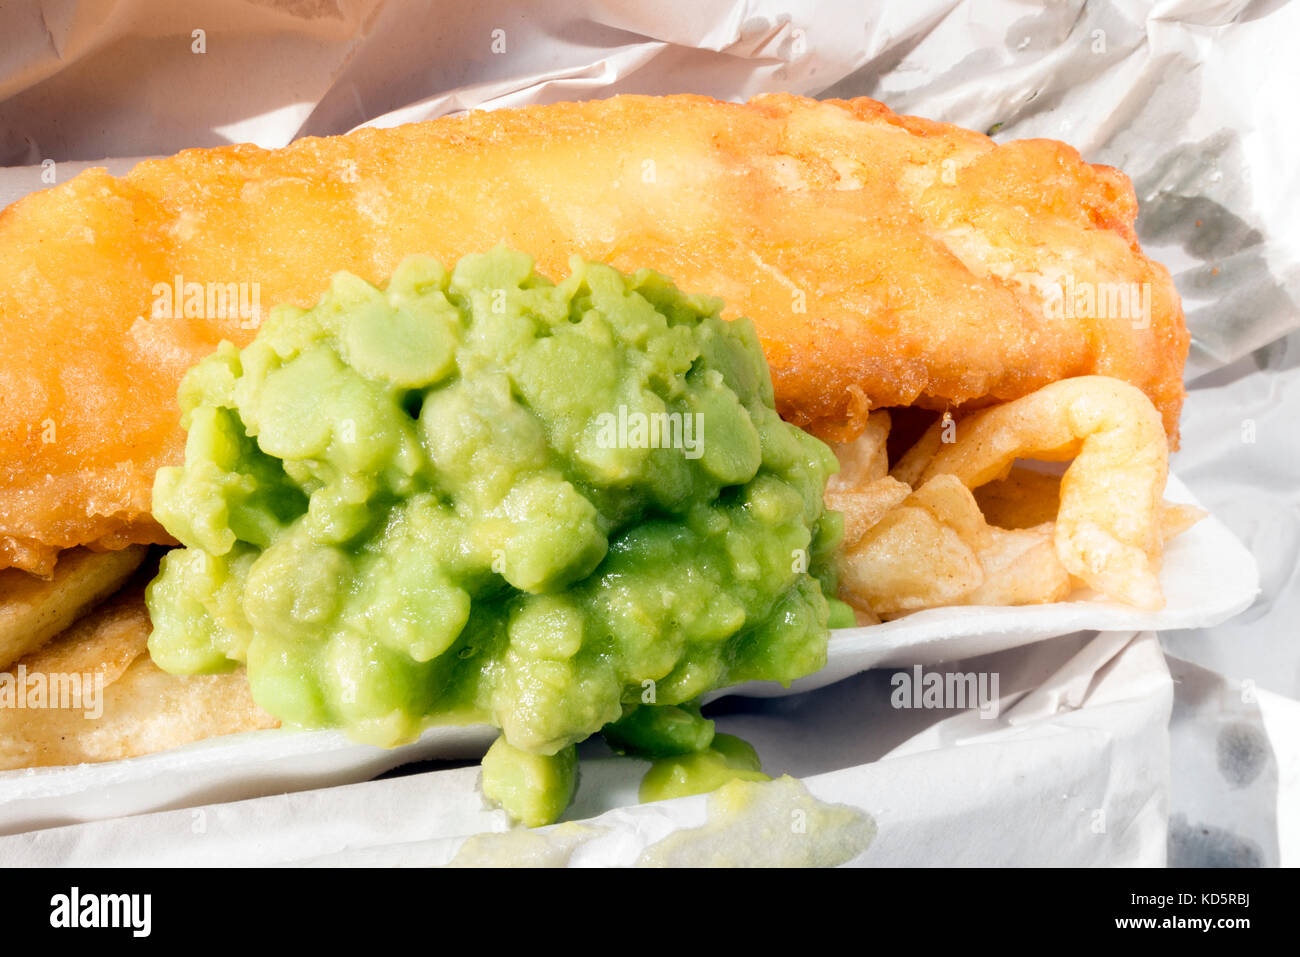 El pescado con patatas fritas y puré de guisantes, envuelto en papel de una comida para llevar, Reino Unido. Foto de stock